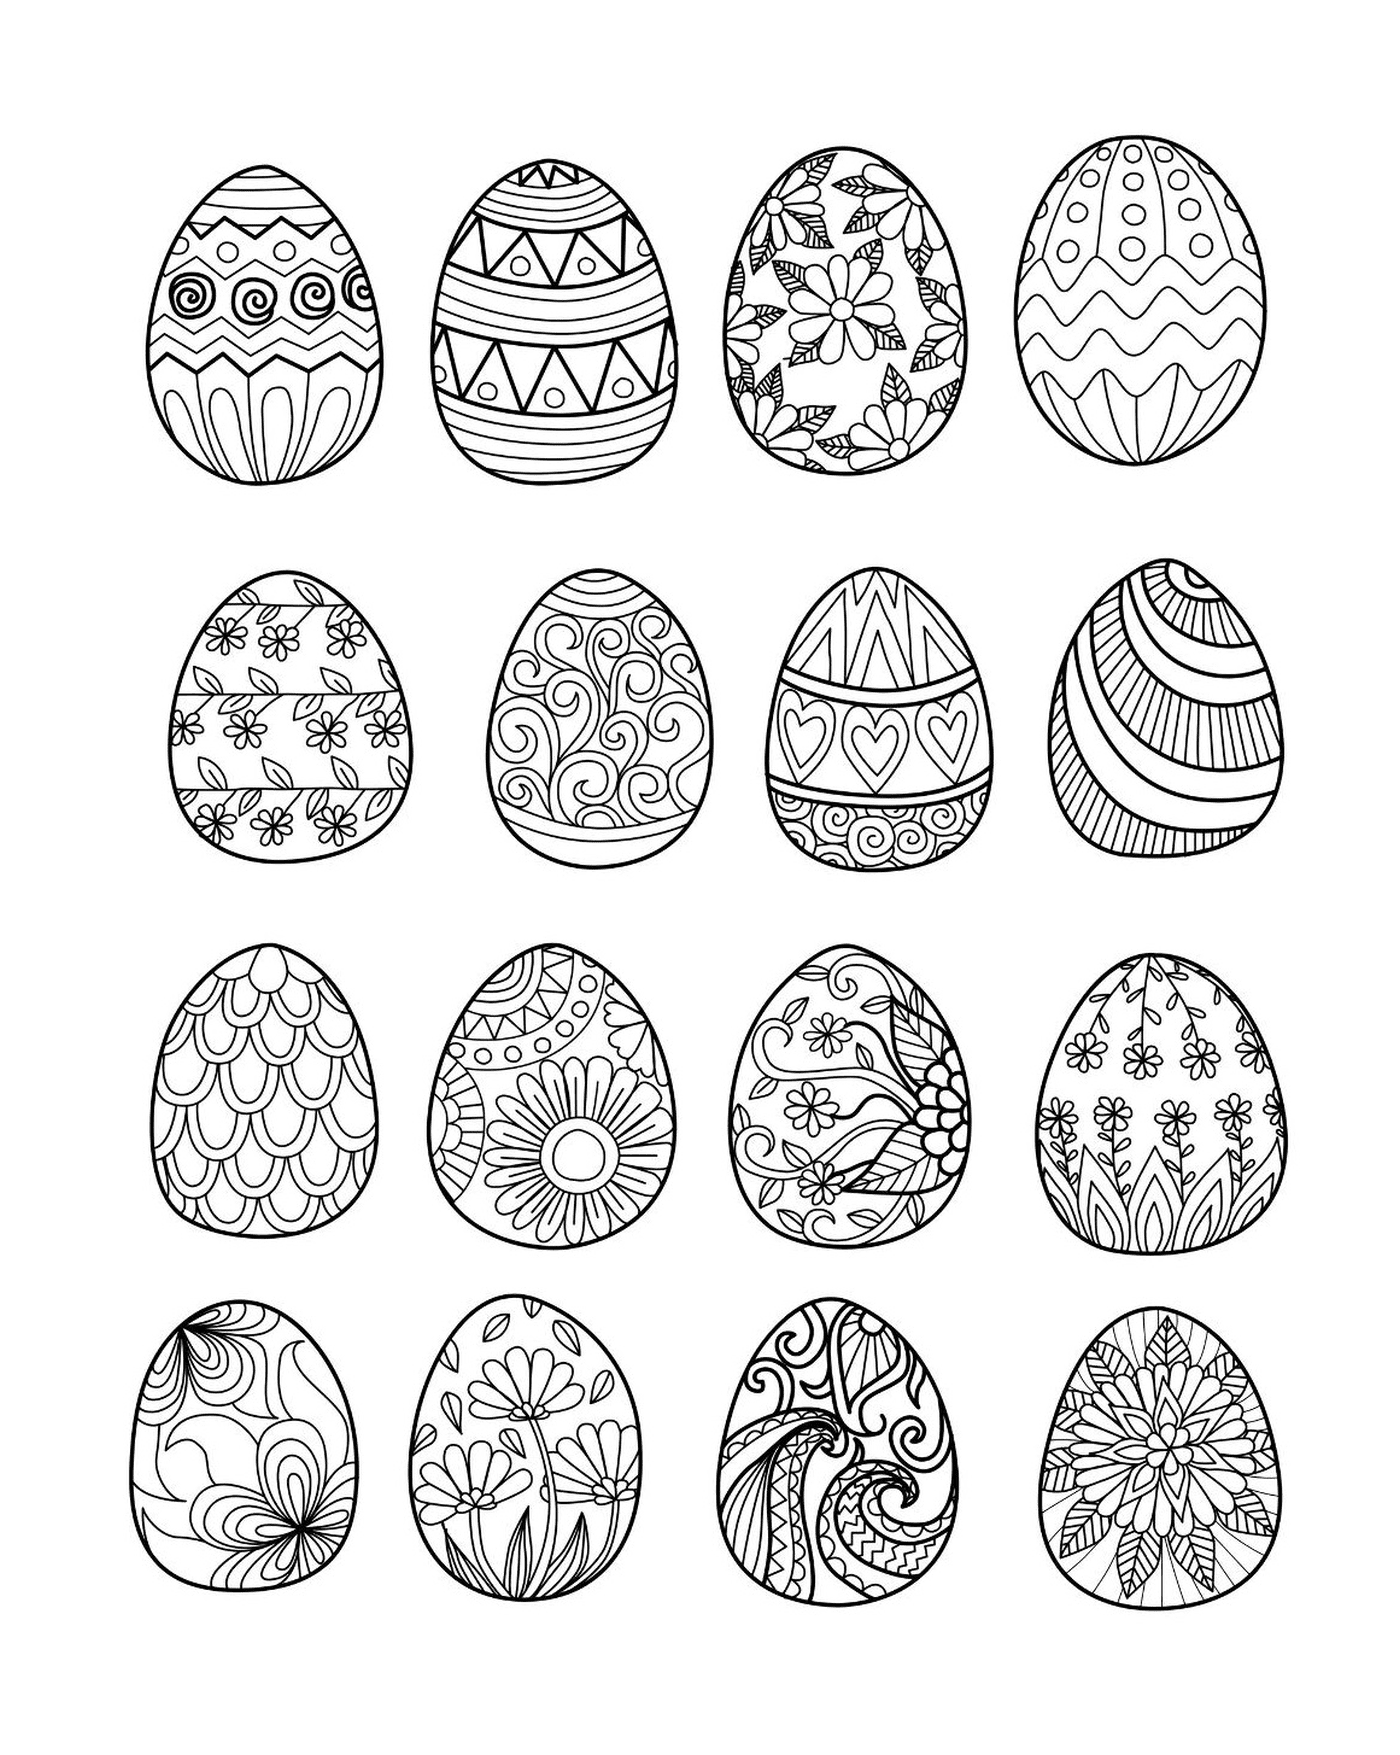  6 uova insieme 